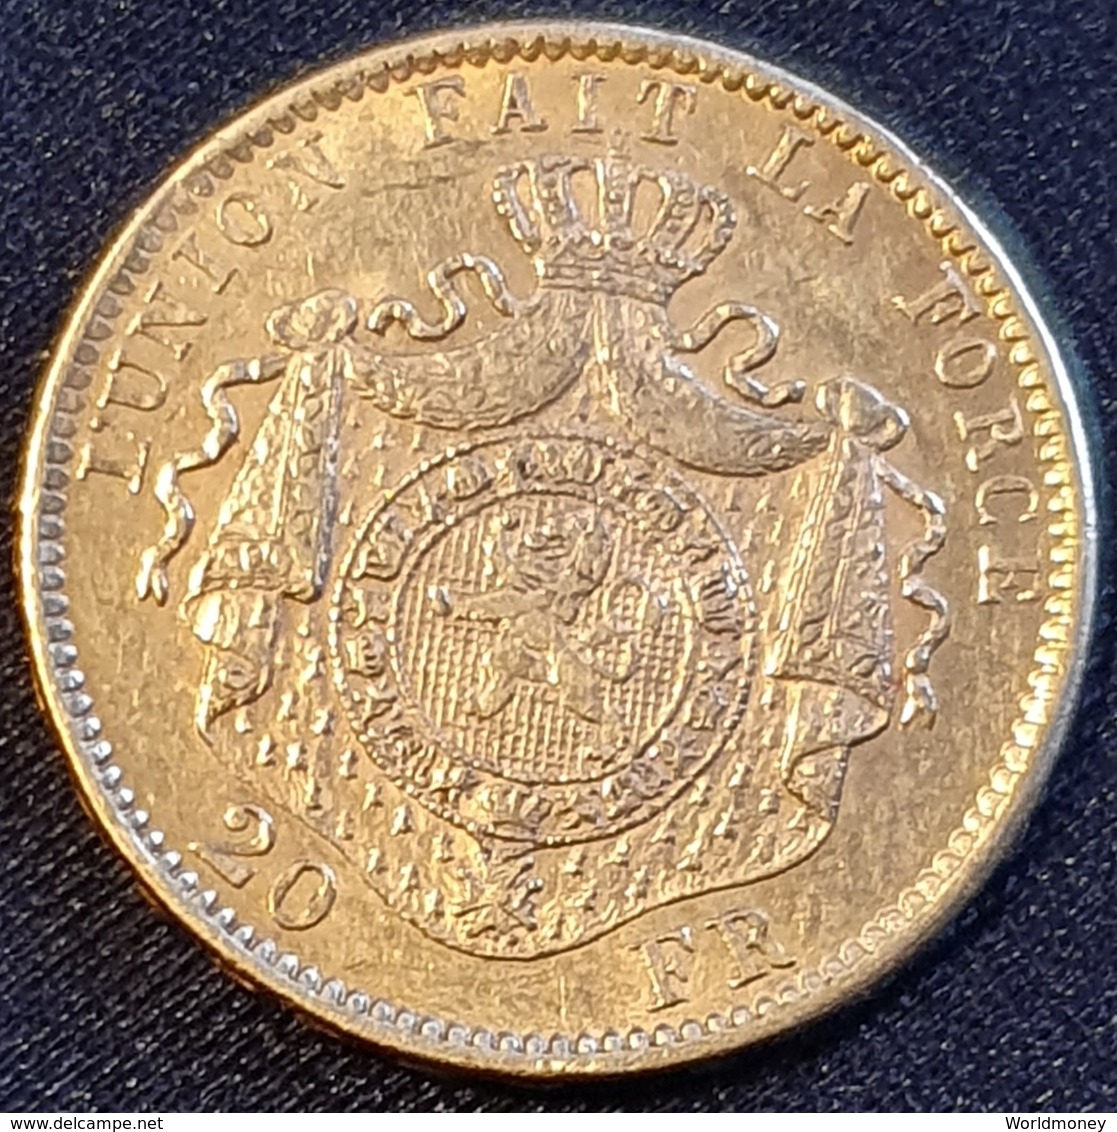 Belgium 20 Francs 1876 (Gold) - 20 Frank (gold)